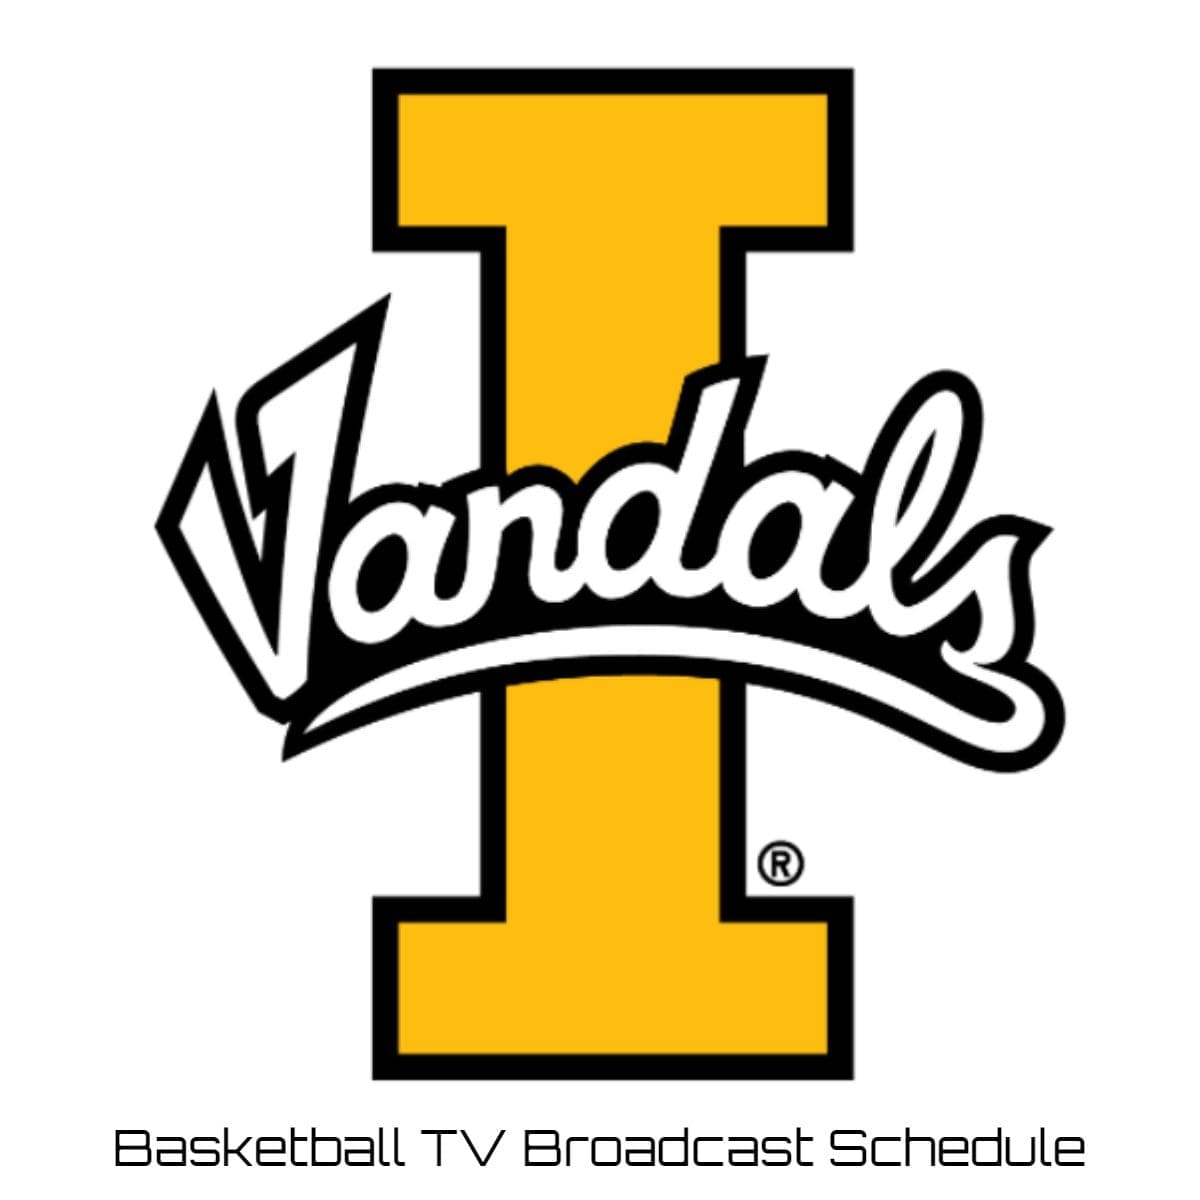 Idaho Vandals Basketball TV Broadcast Schedule